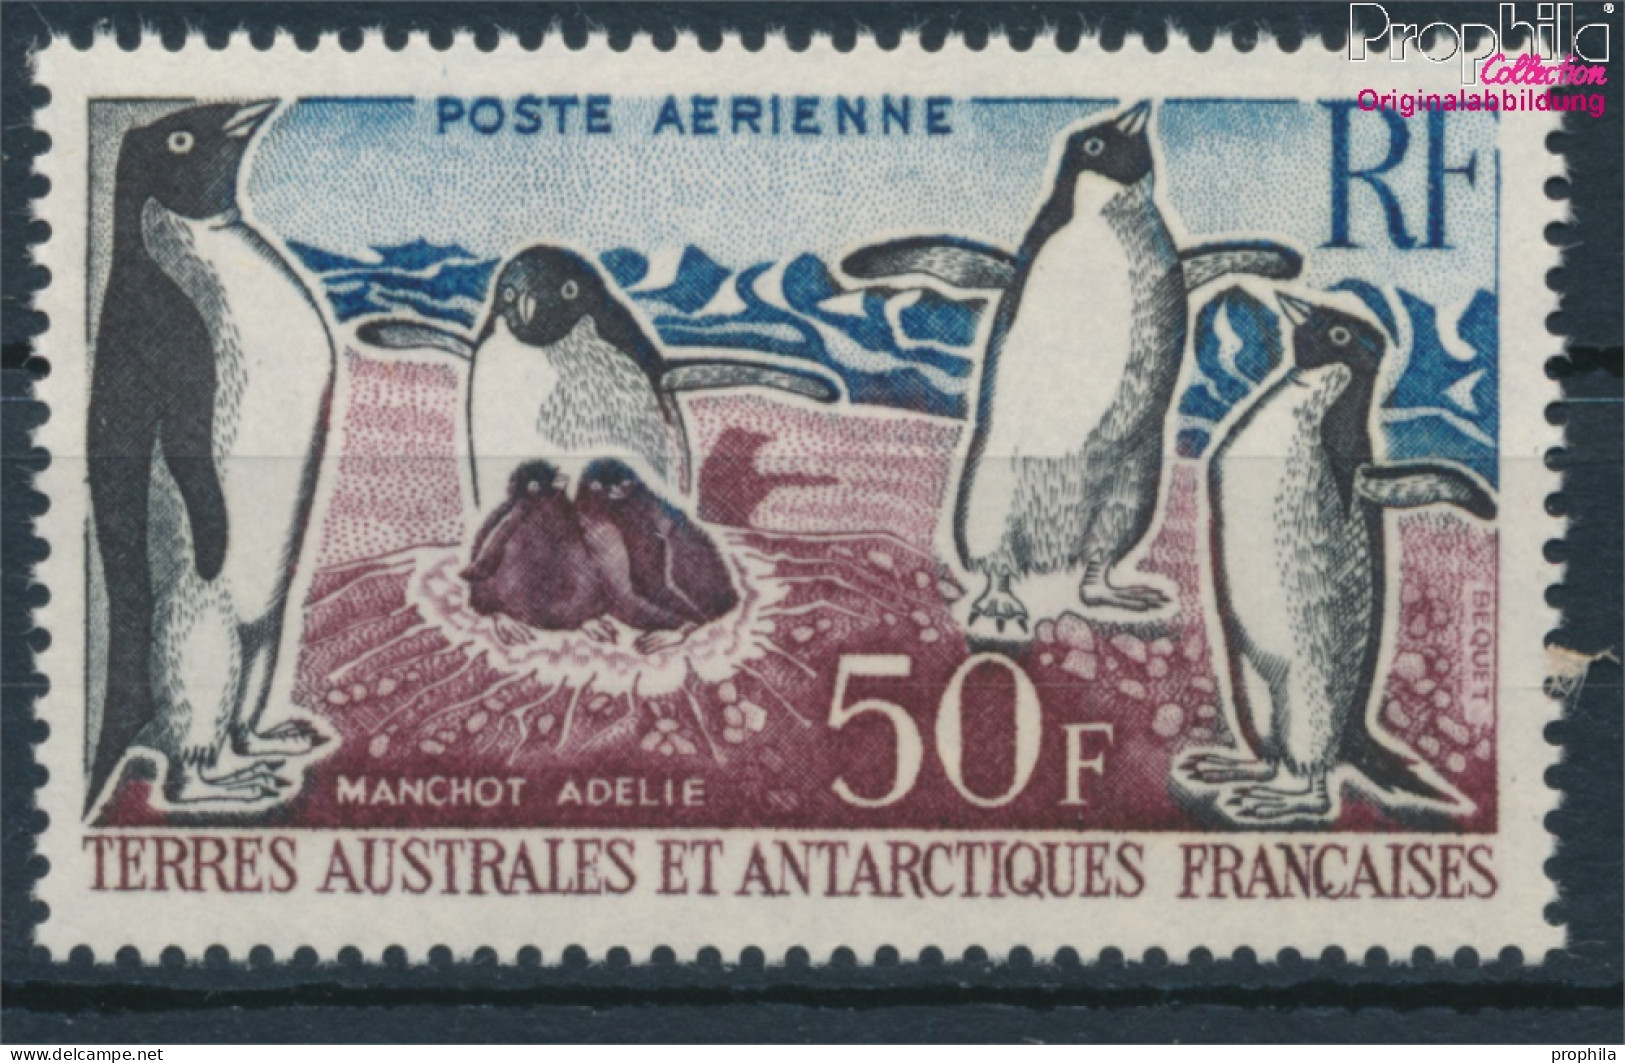 Französ. Gebiete Antarktis 26 (kompl.Ausg.) Postfrisch 1962 Freimarke:Tiere (10174650 - Neufs